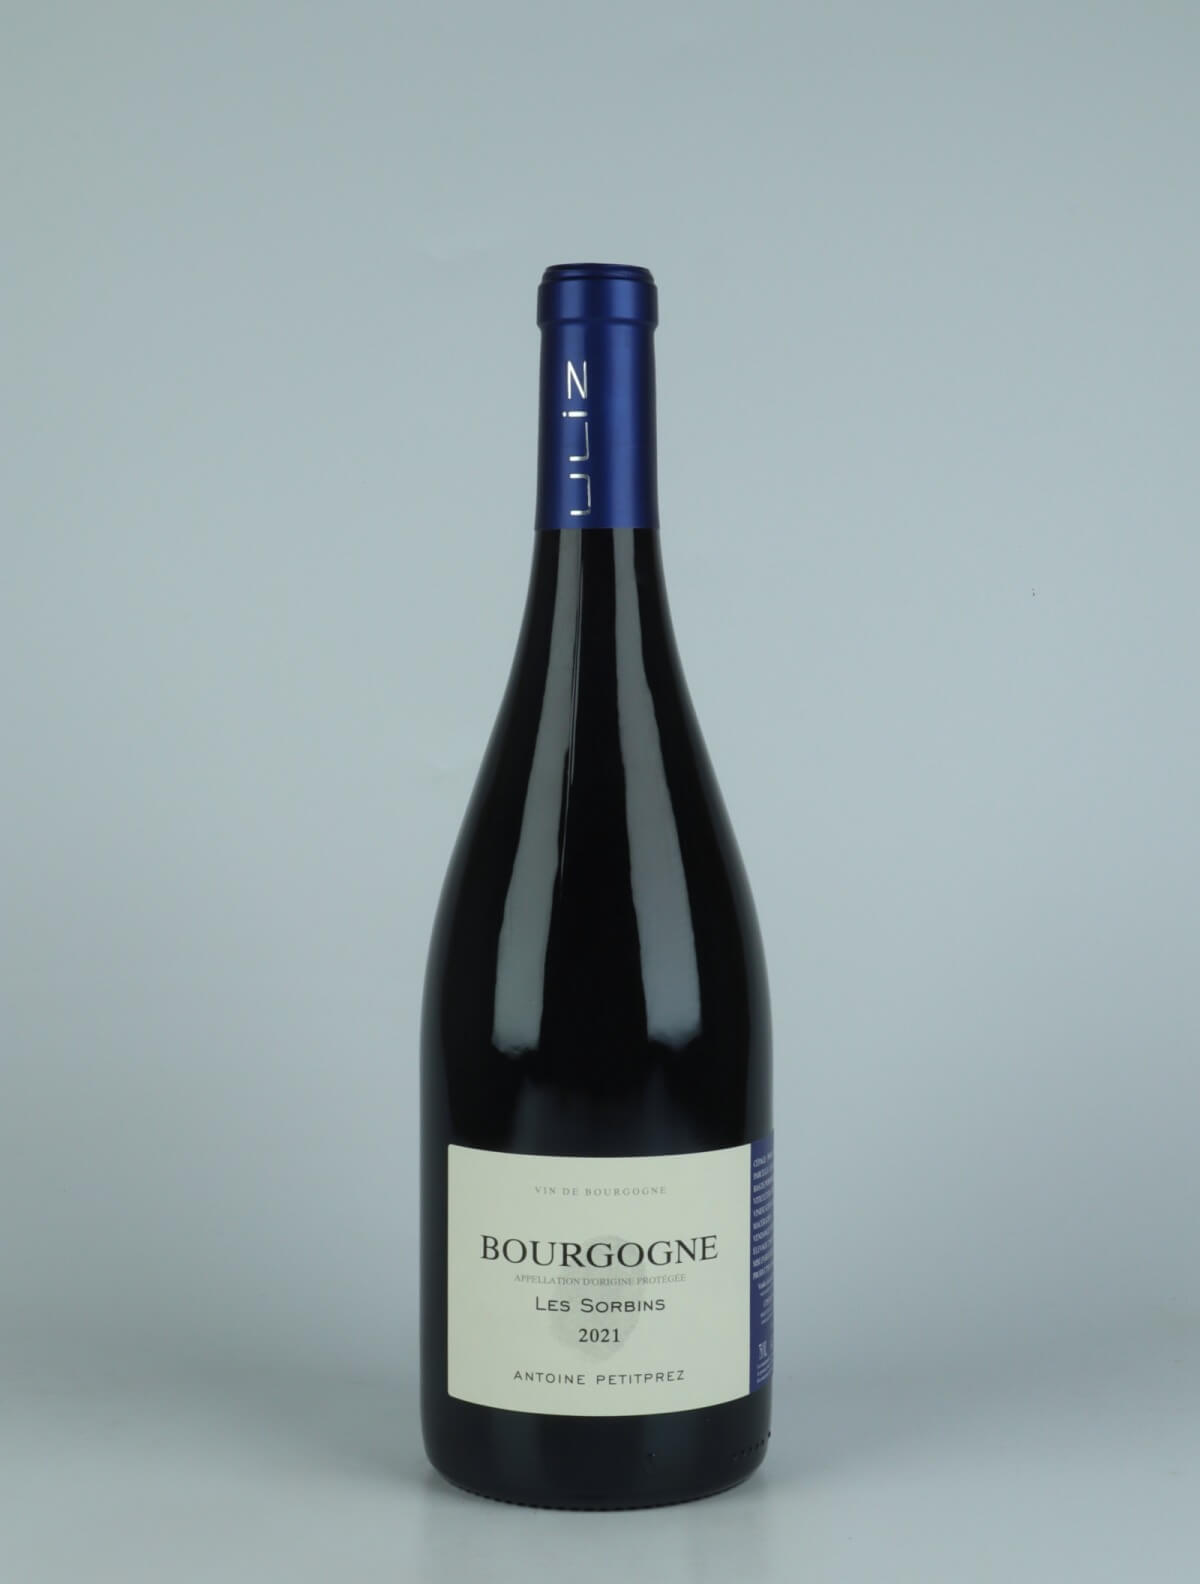 A bottle 2021 Bourgogne Rouge - Les Sorbins Red wine from Antoine Petitprez, Burgundy in France